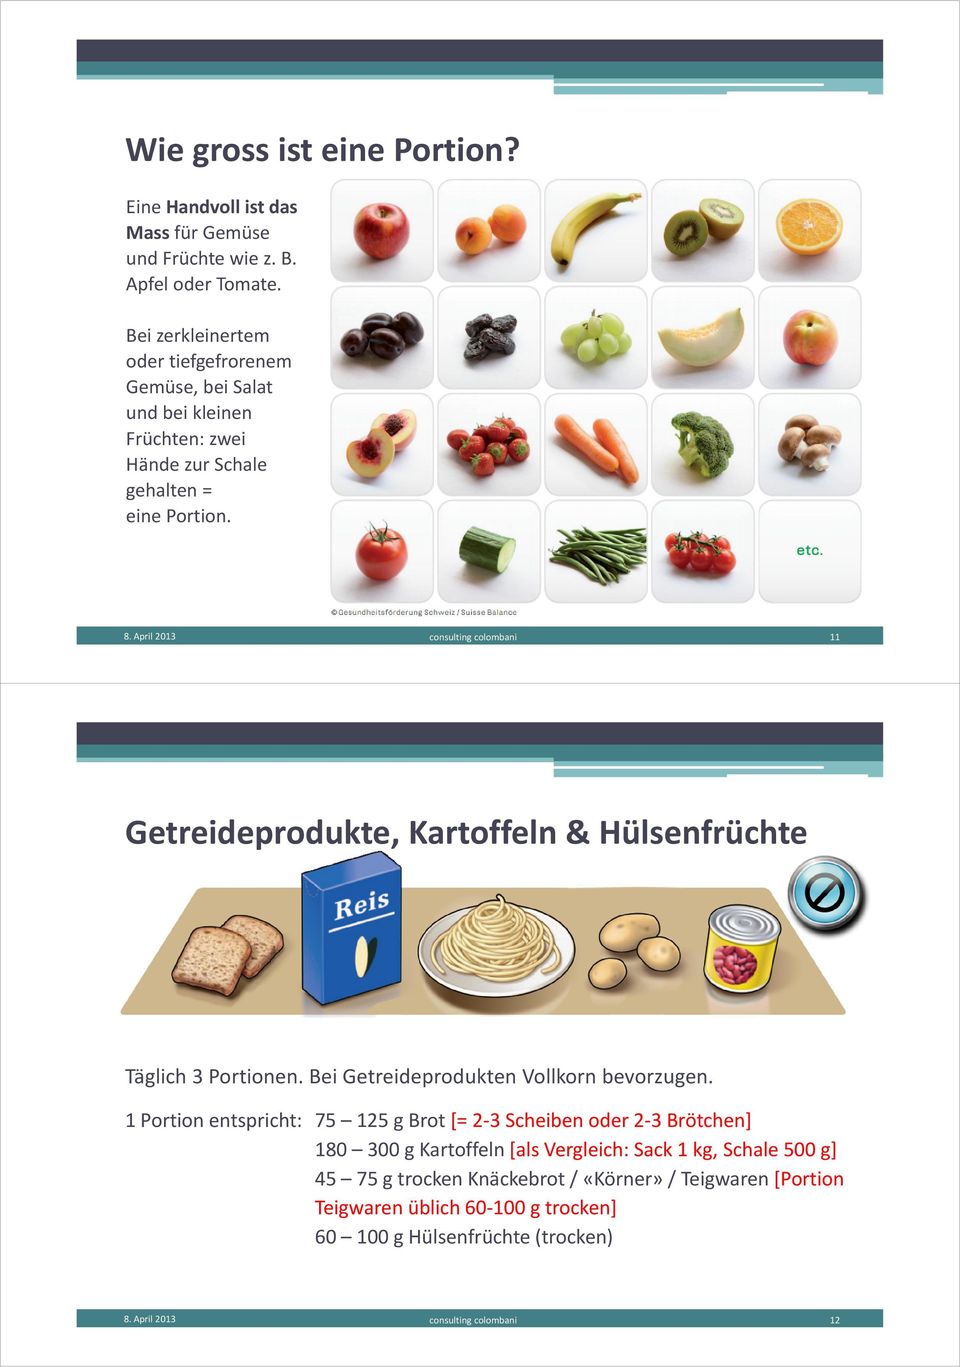 April 2013 consulting colombani 11 Getreideprodukte, Kartoffeln & Hülsenfrüchte Täglich 3 Portionen. Bei Getreideprodukten Vollkorn bevorzugen.